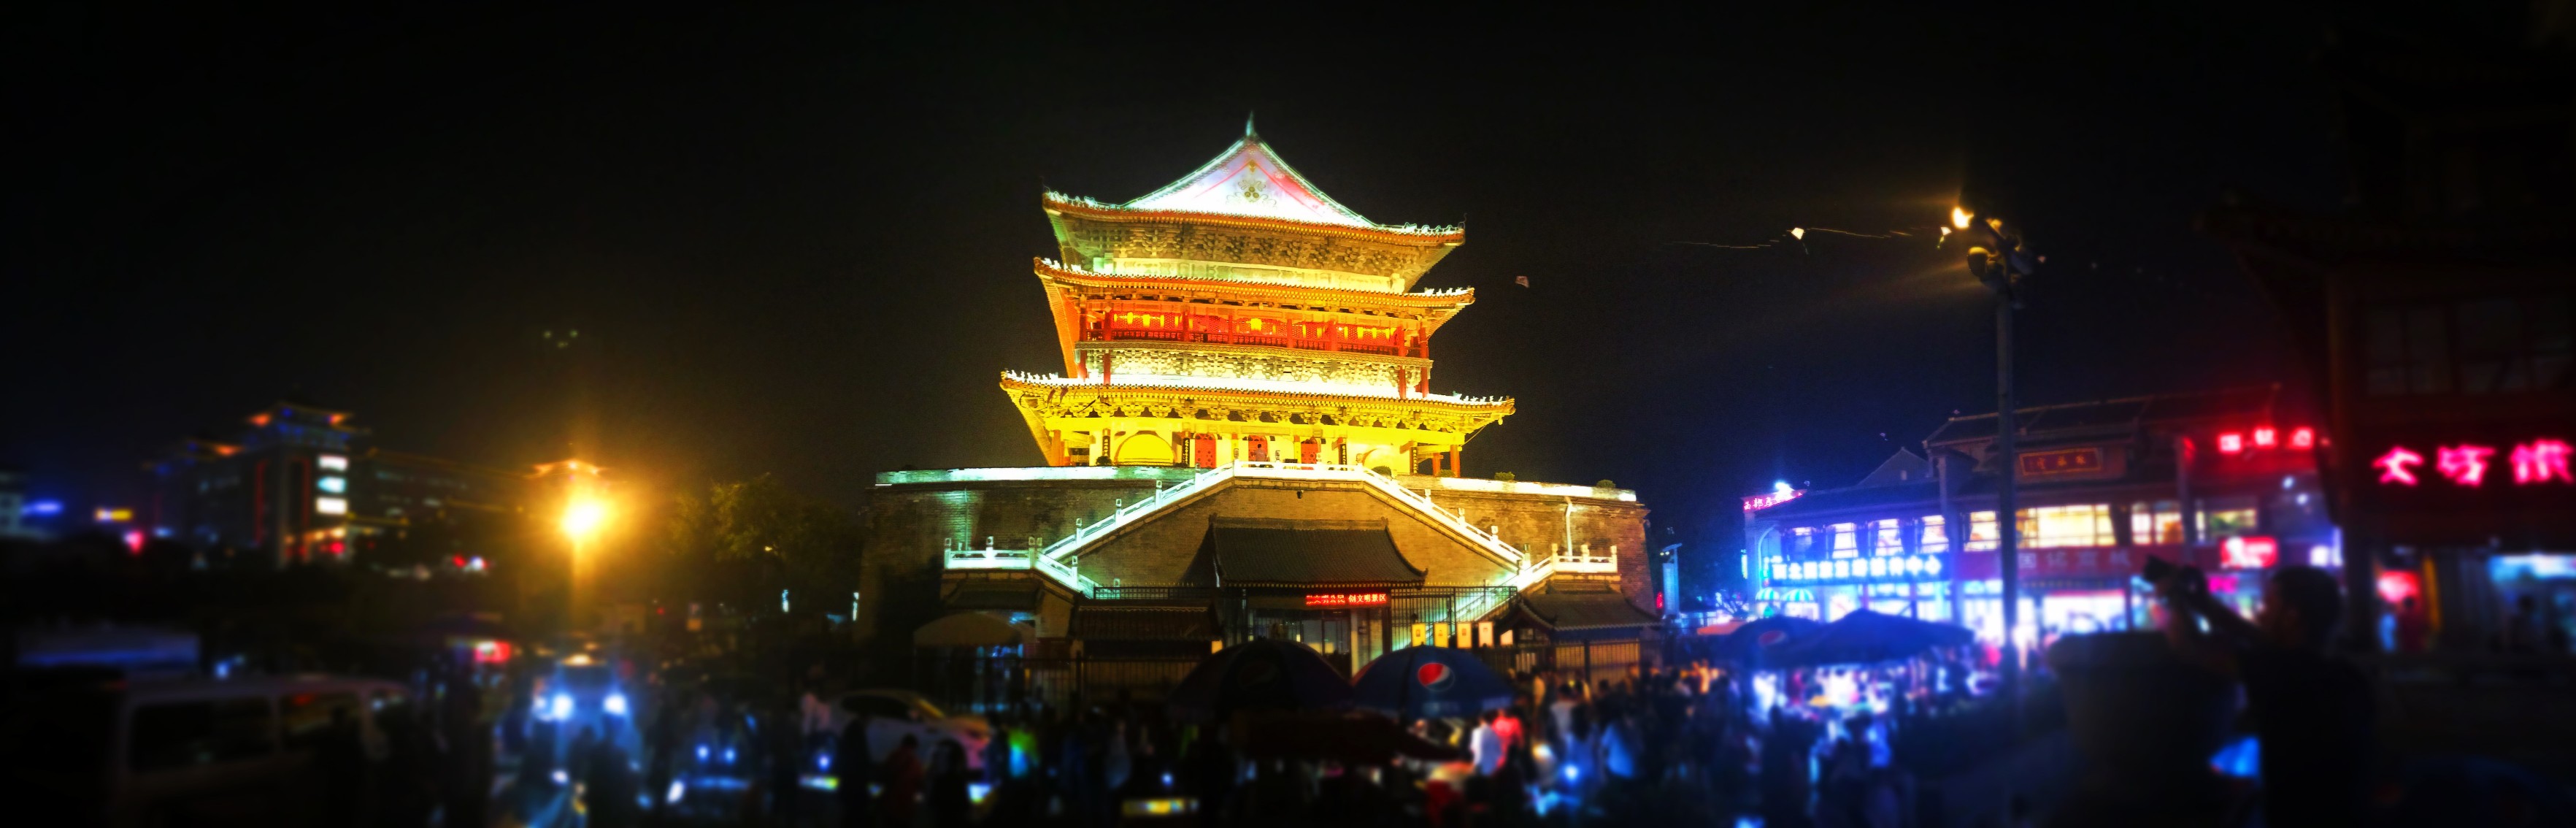 Bell-Tower-at-Muslim-Quarter-in-Xian-at-night-panoramic.jpg